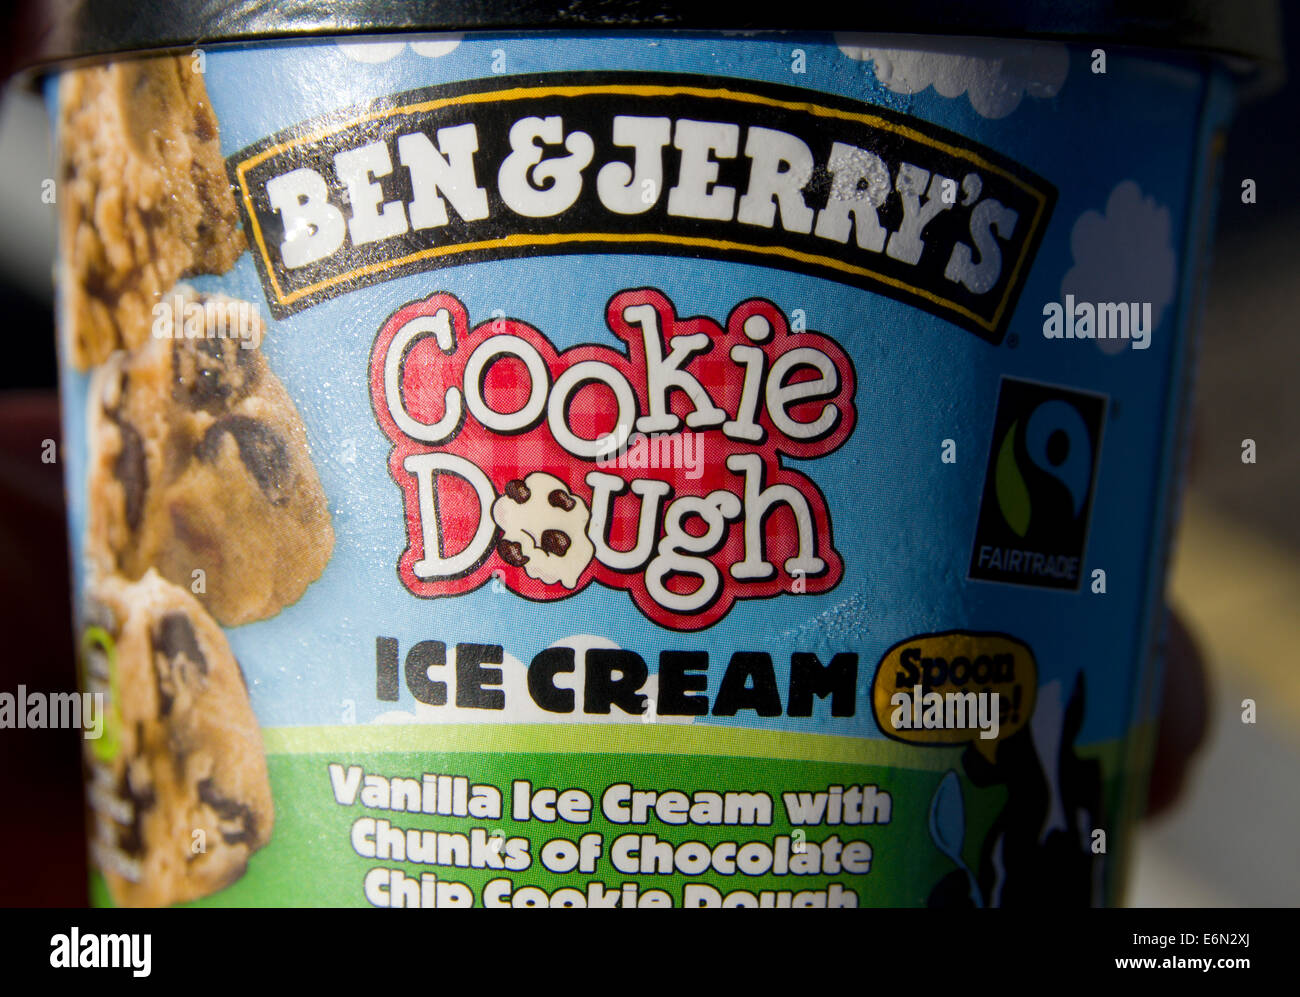 Ben & Jerry's Cookie Dough Icecream tub Stock Photo